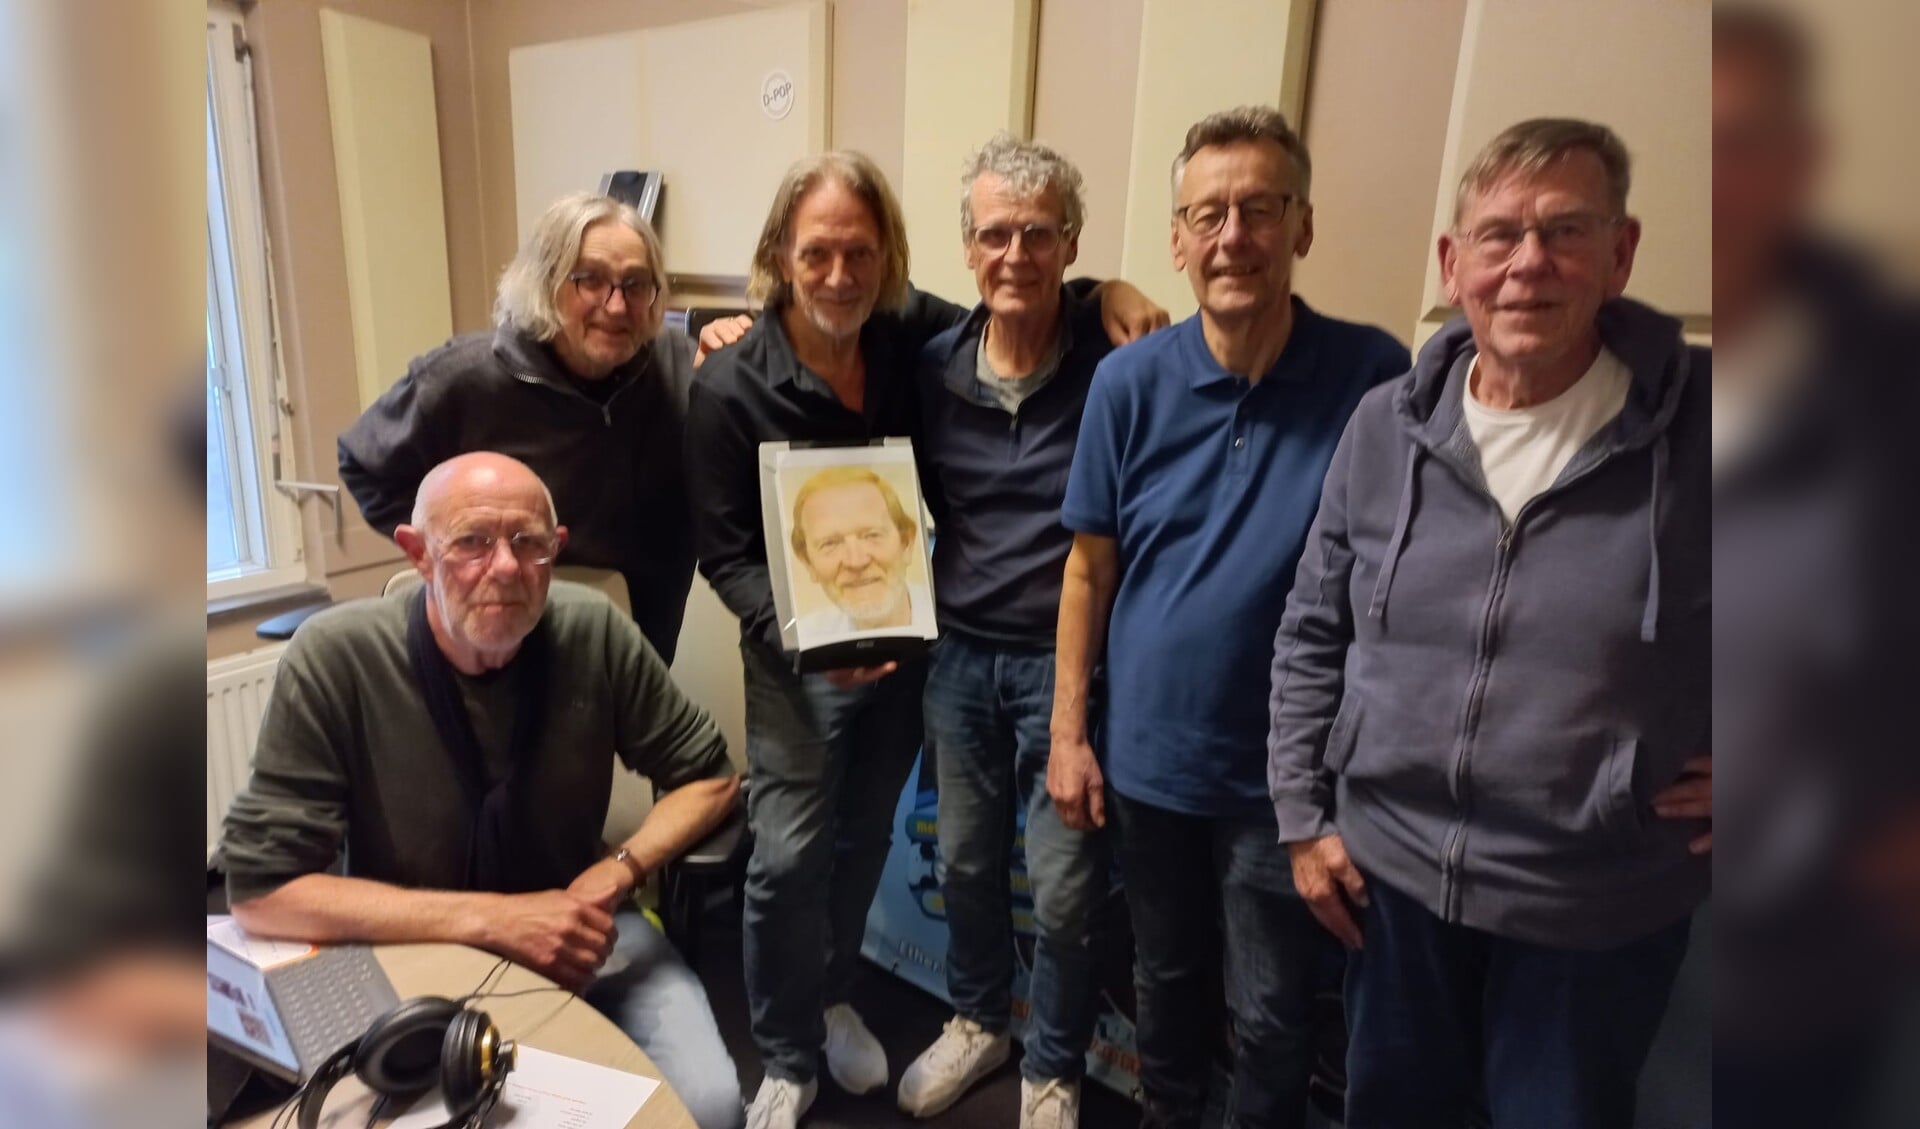 De crew van E8 Radio met v.l.n.r:. Bert van den Berg, Bert Janssen, Theo Hakkert (met een portret van de afwezige Jaap Heerze), Hans Exterkate, Gerrit Schinkel en technicus Sjaak Hulshof.